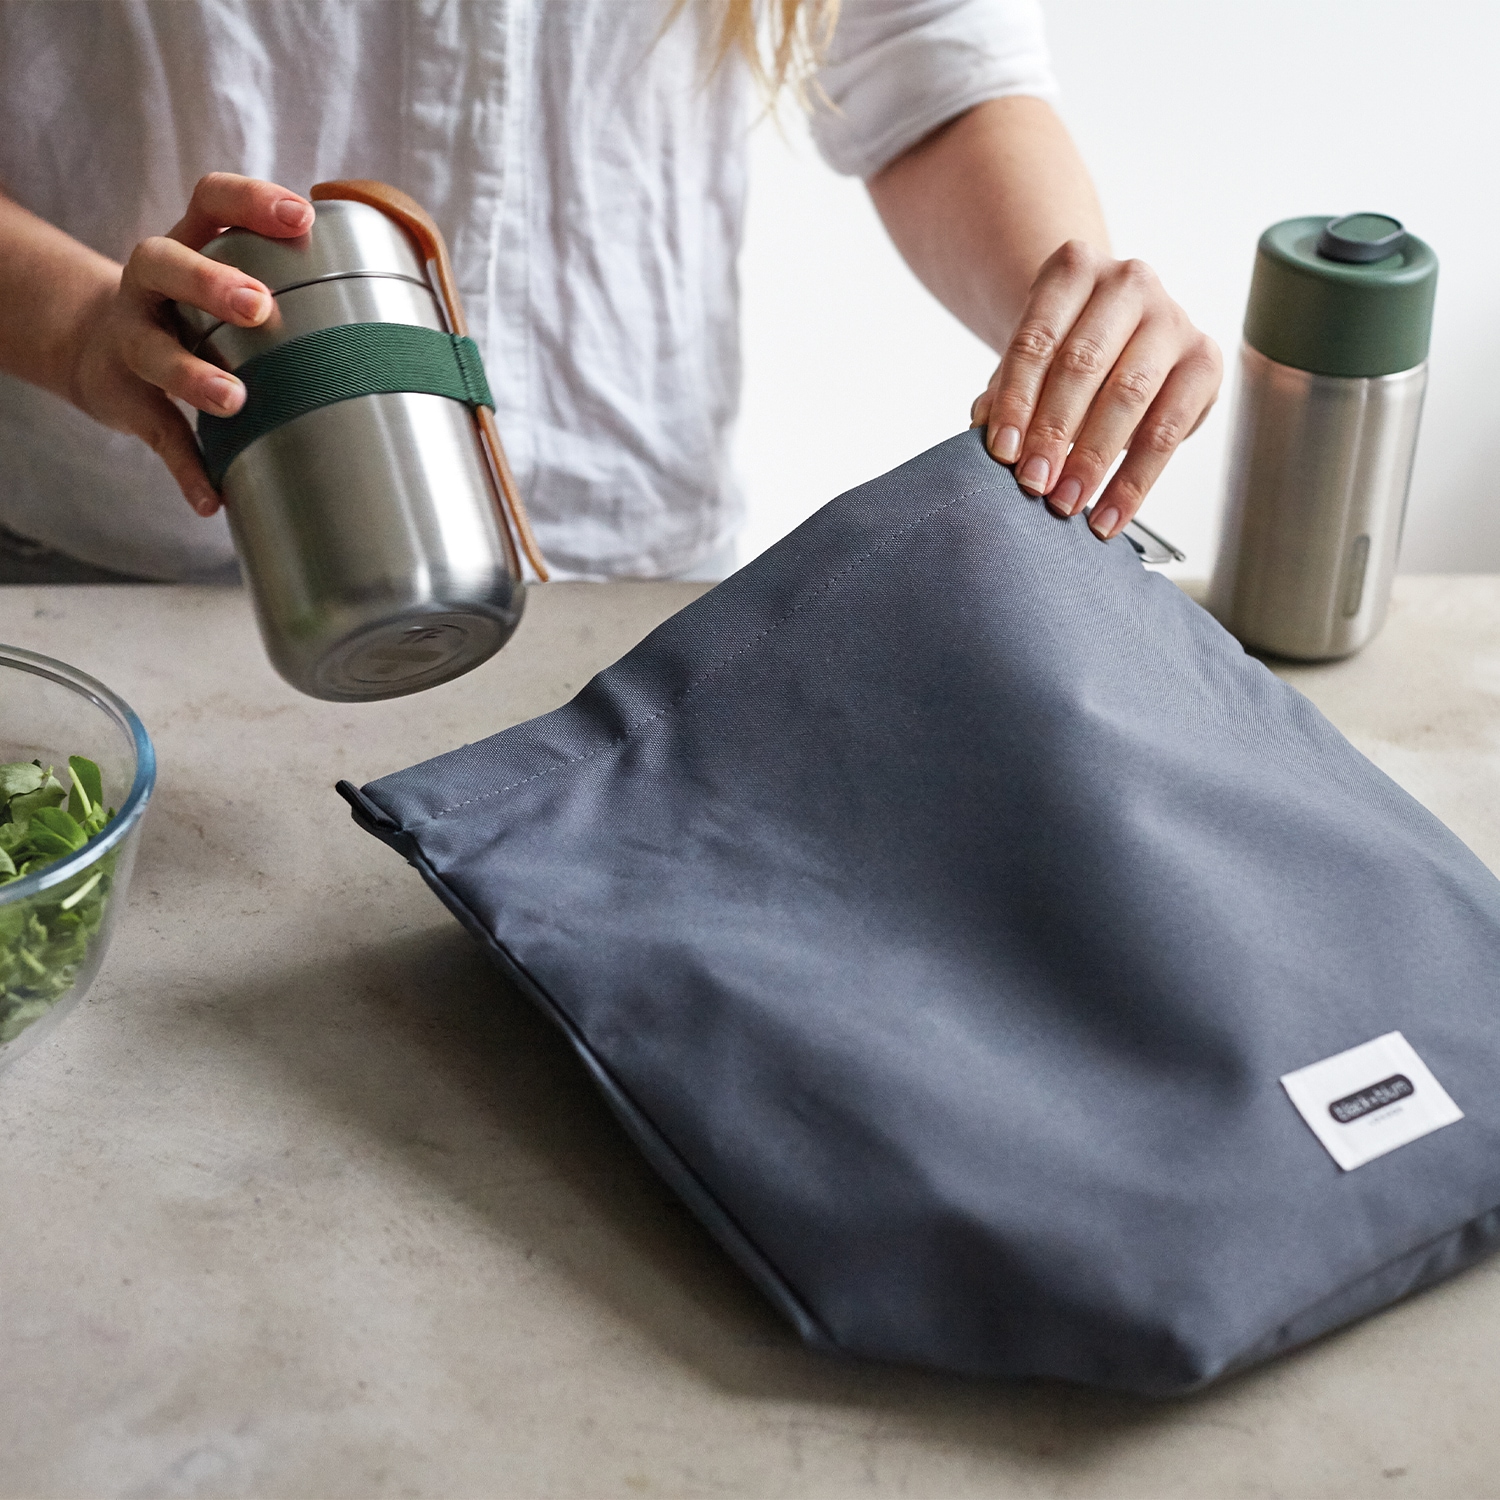 black+blum Lunchbox »Lunchbag«, (1 tlg.), recyceltes PET, wasserabweisend, 670 ml